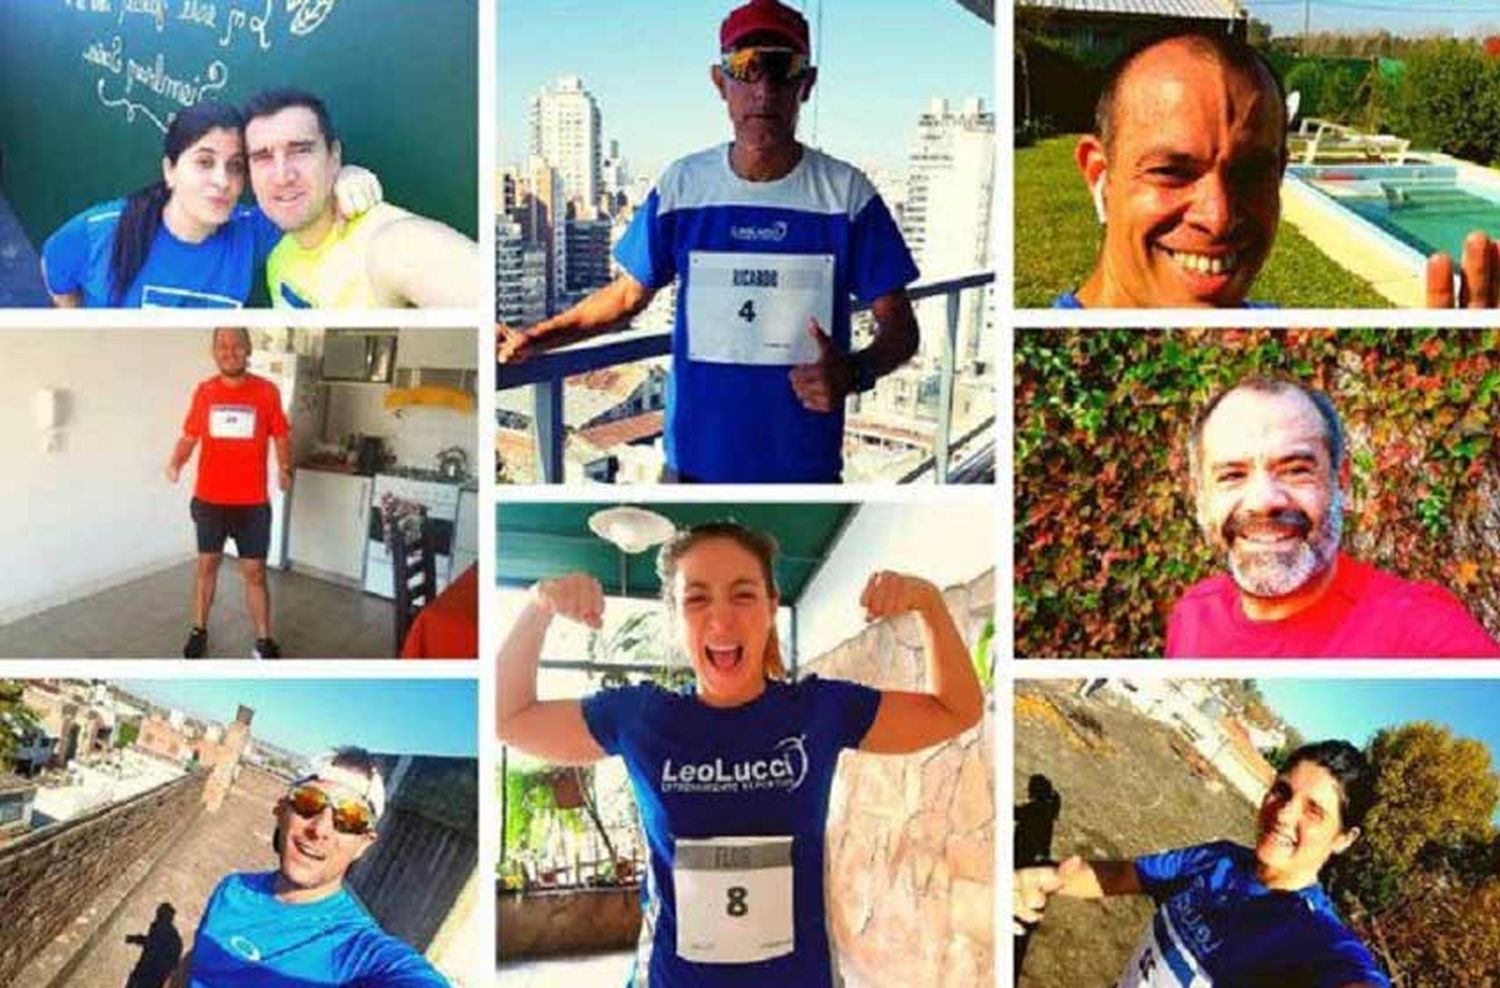 Atención amantes del running: Rosario será epicentro de una maratón virtual que se correrá en los cinco continentes